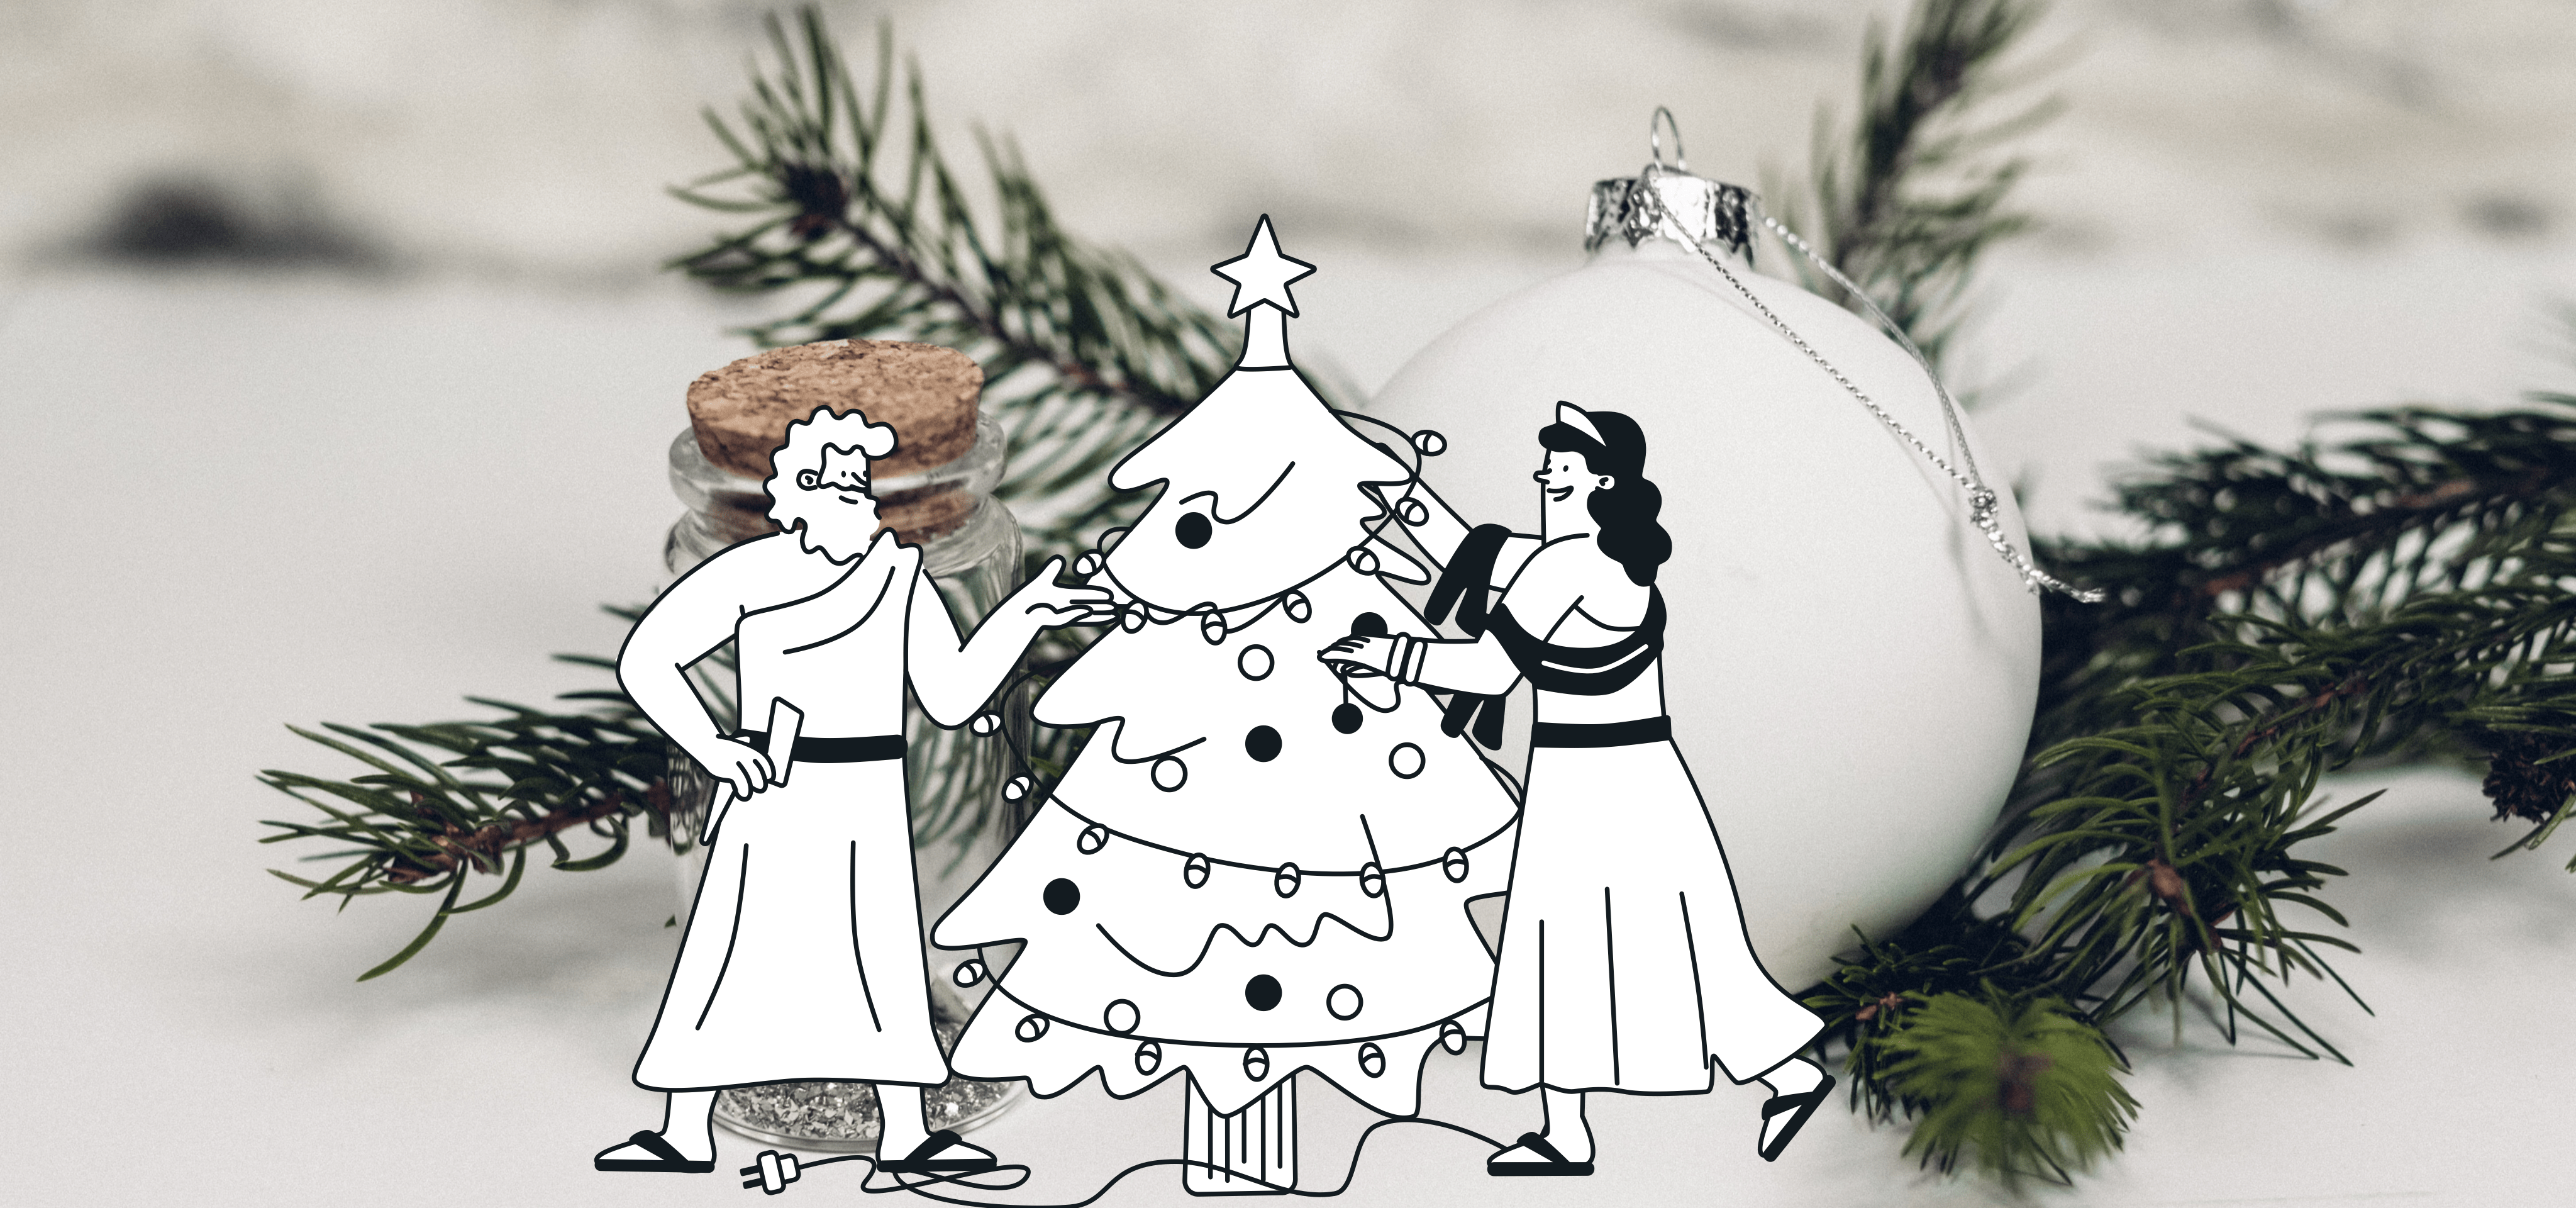 Dos dioses decoran un árbol de Navidad frente a otros adornos